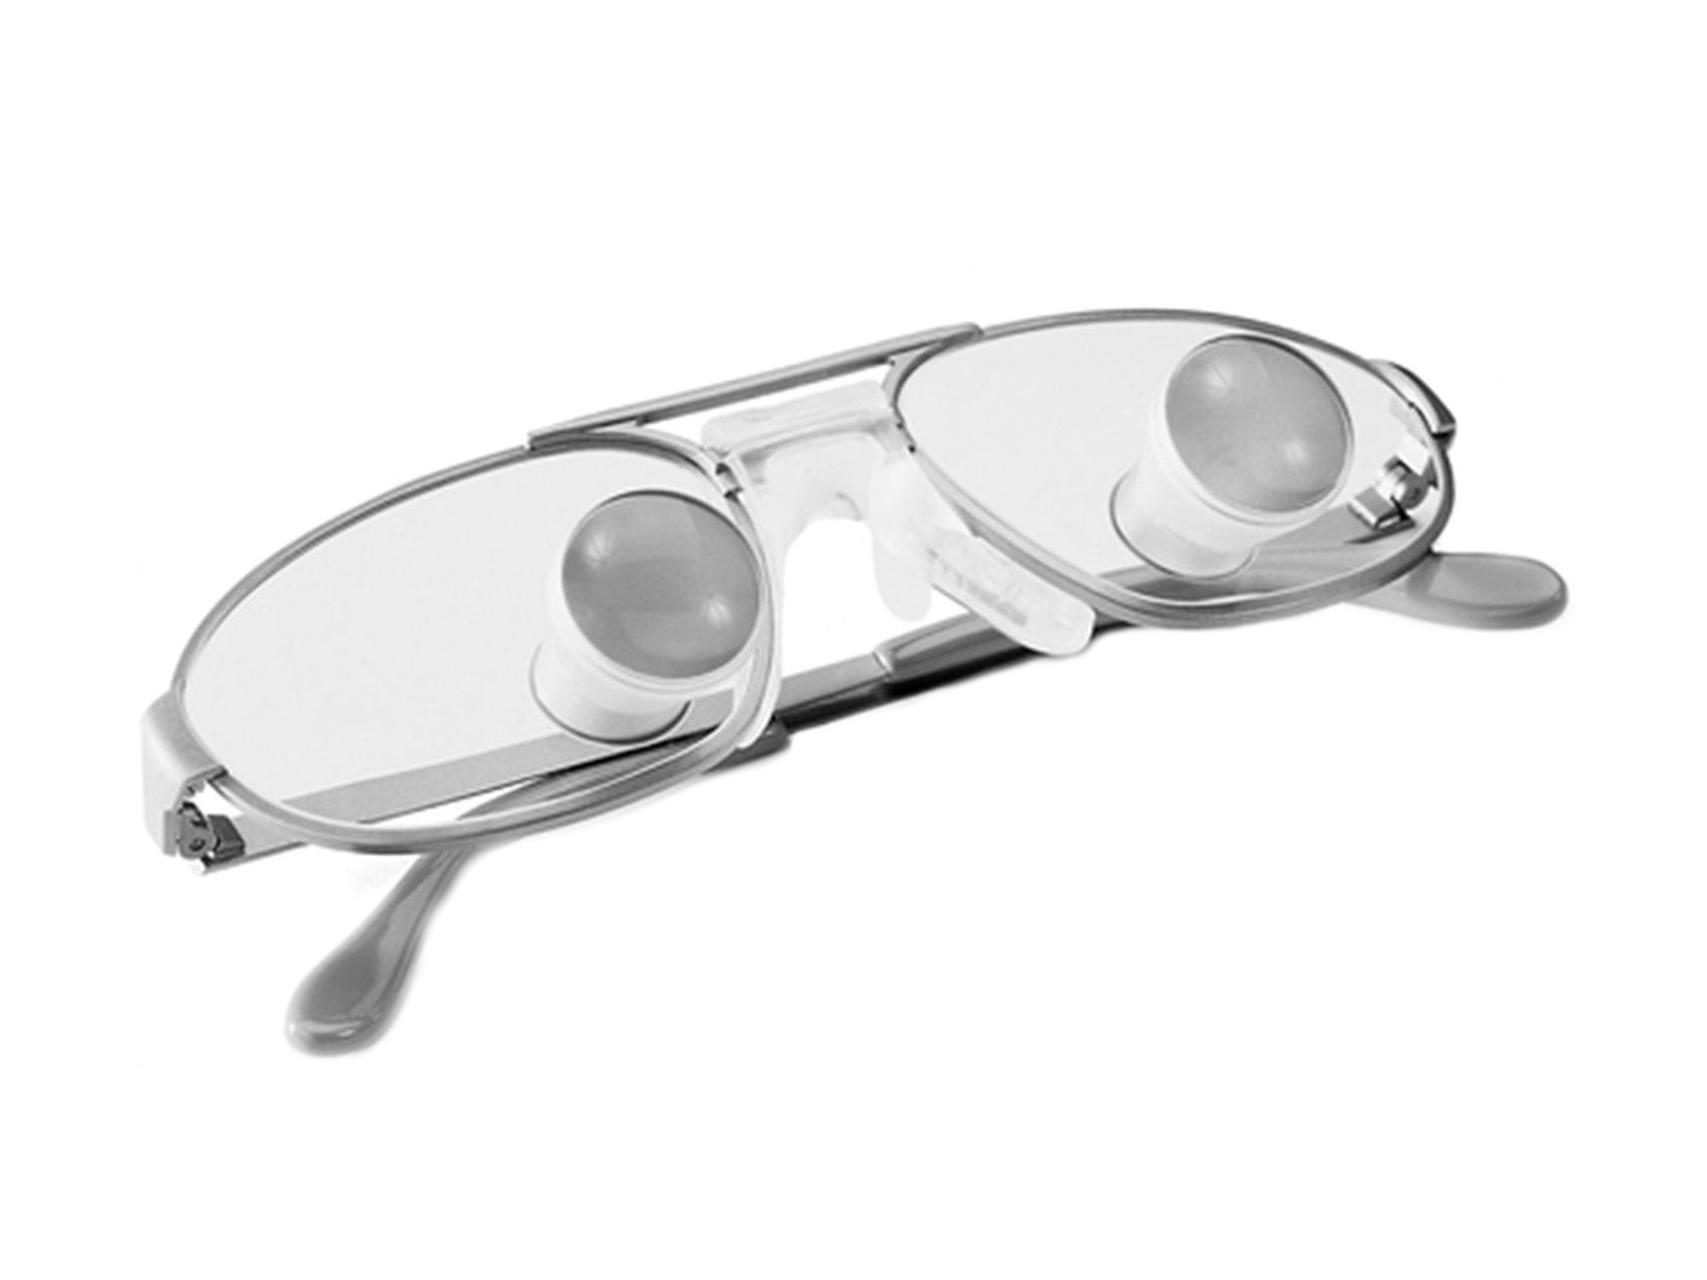 Bağcıklı gözlük camları ve doğrudan camların üzerine monte edilmiş ZEISS Telelup Gözlükler.